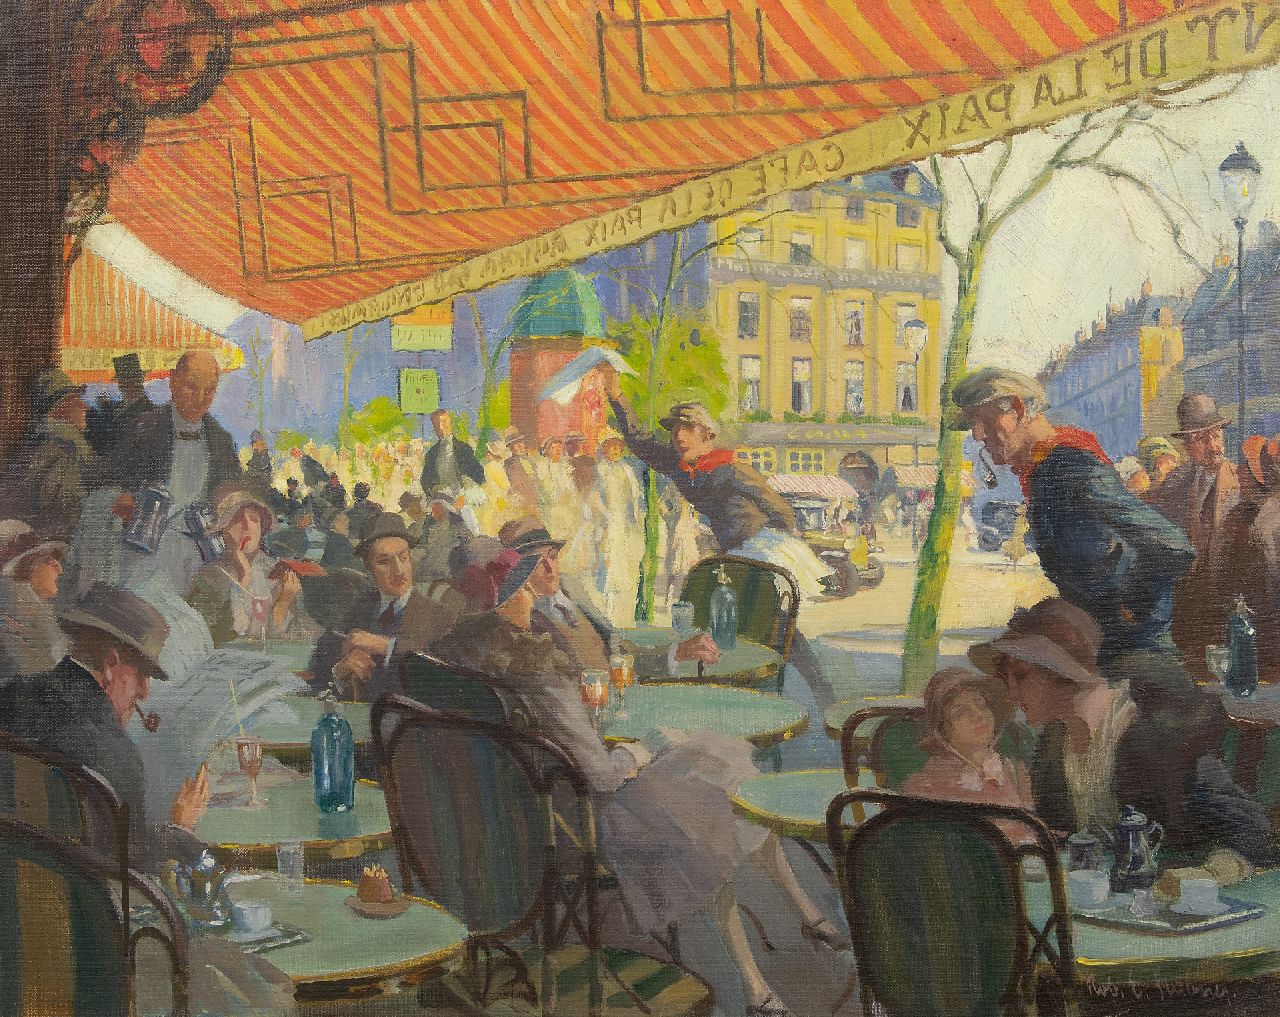 Stübner R.E.  | Robert Emil Stübner | Paintings offered for sale | The terrace of Café de la Paix on the Place de l'Opéra in Paris, oil on canvas 60.2 x 75.0 cm, signed l.r.